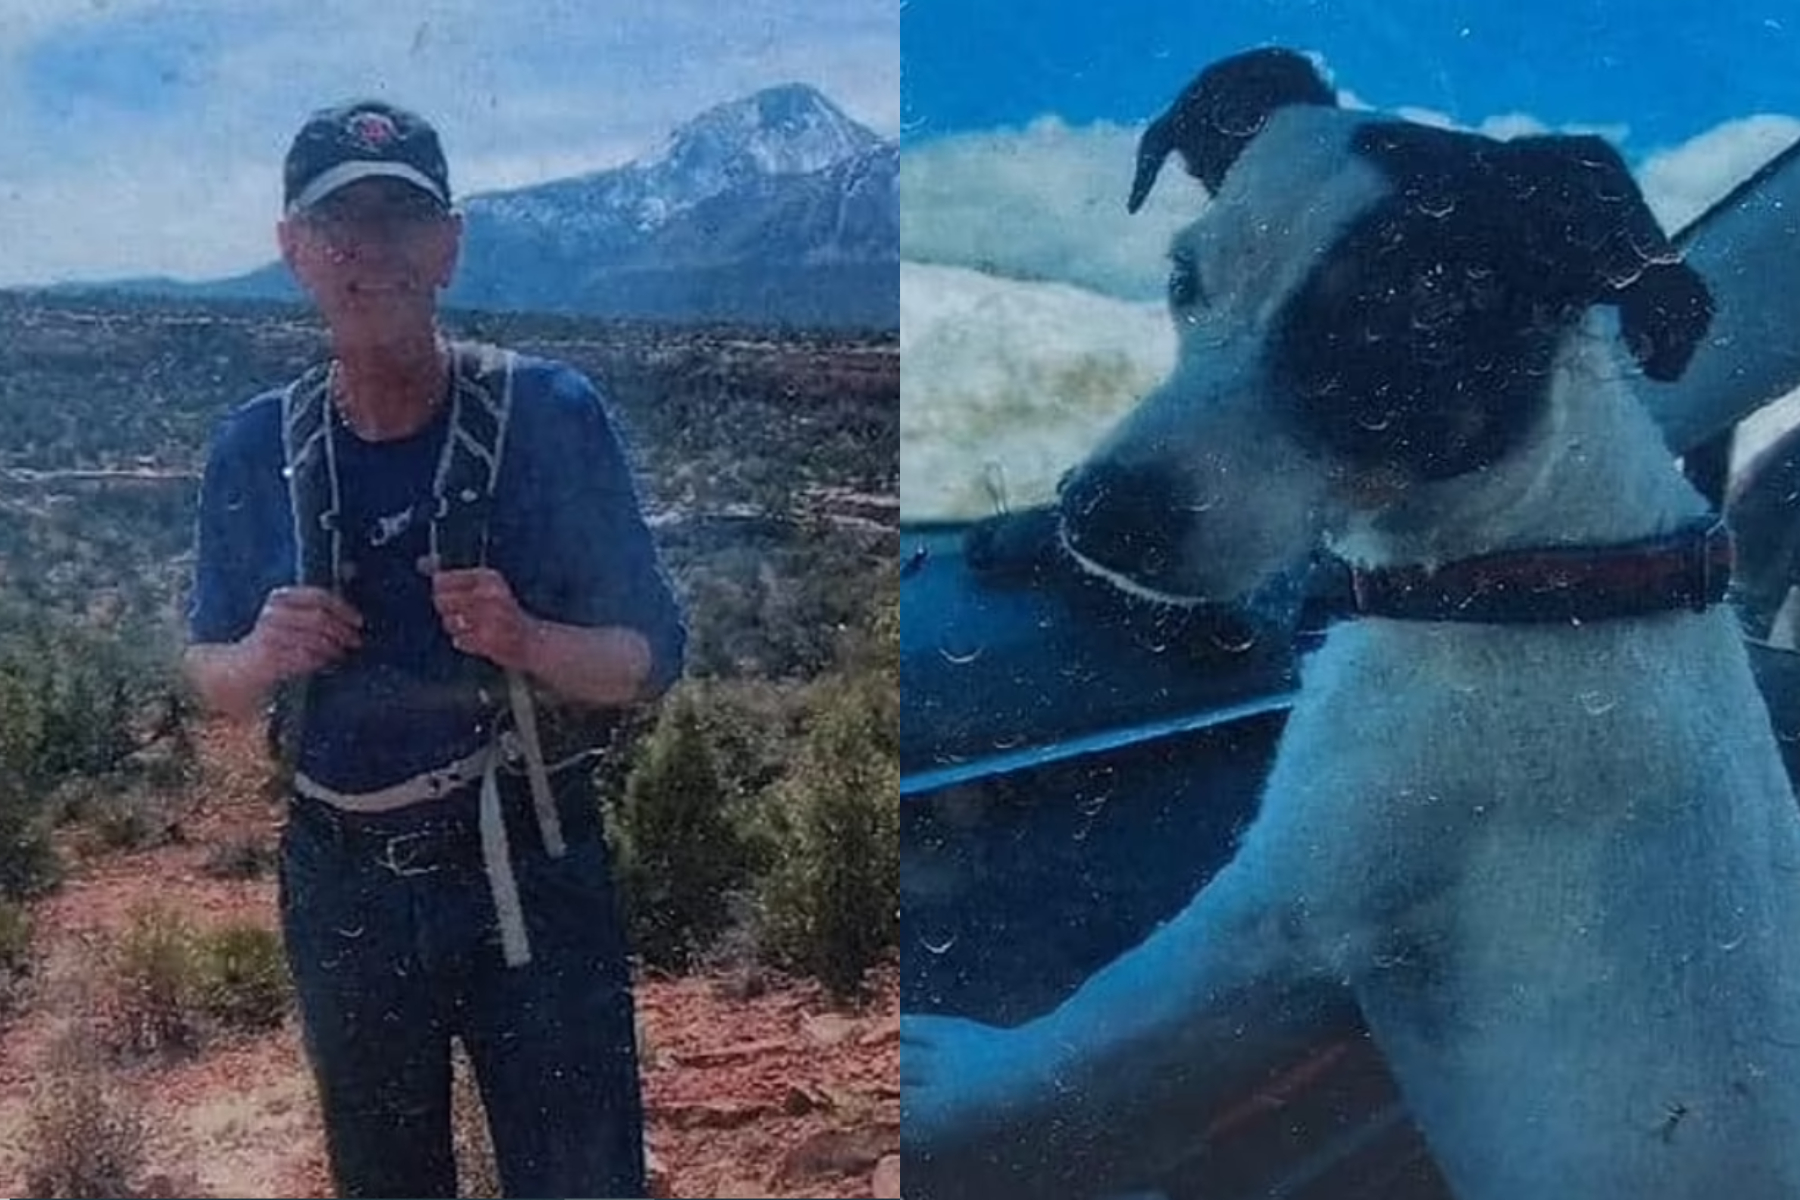 Un bărbat dat dispărut în august a fost găsit mort, în munții. Câinele care-l însoțea era în viață și îl păzea